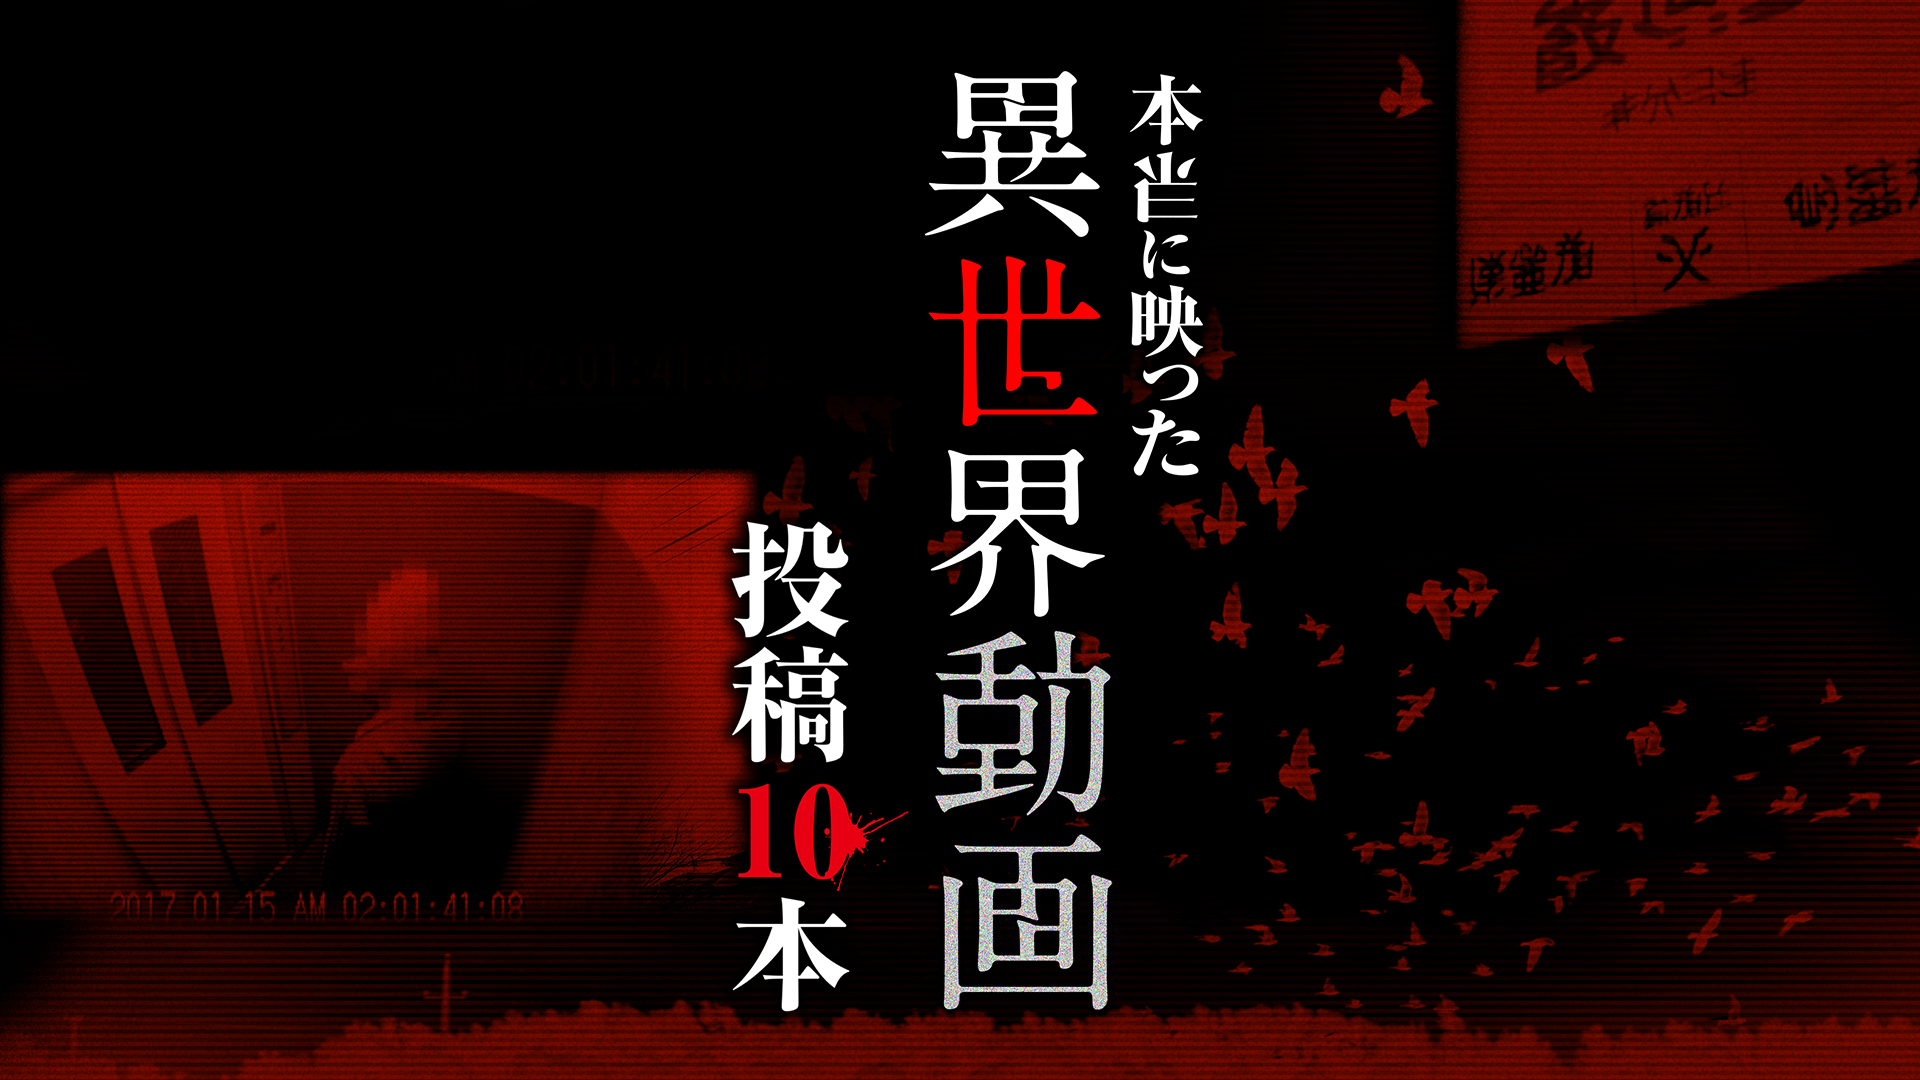 復讐霊 呪殺動画(バラエティ / 2013) - 動画配信 | U-NEXT 31日間無料トライアル